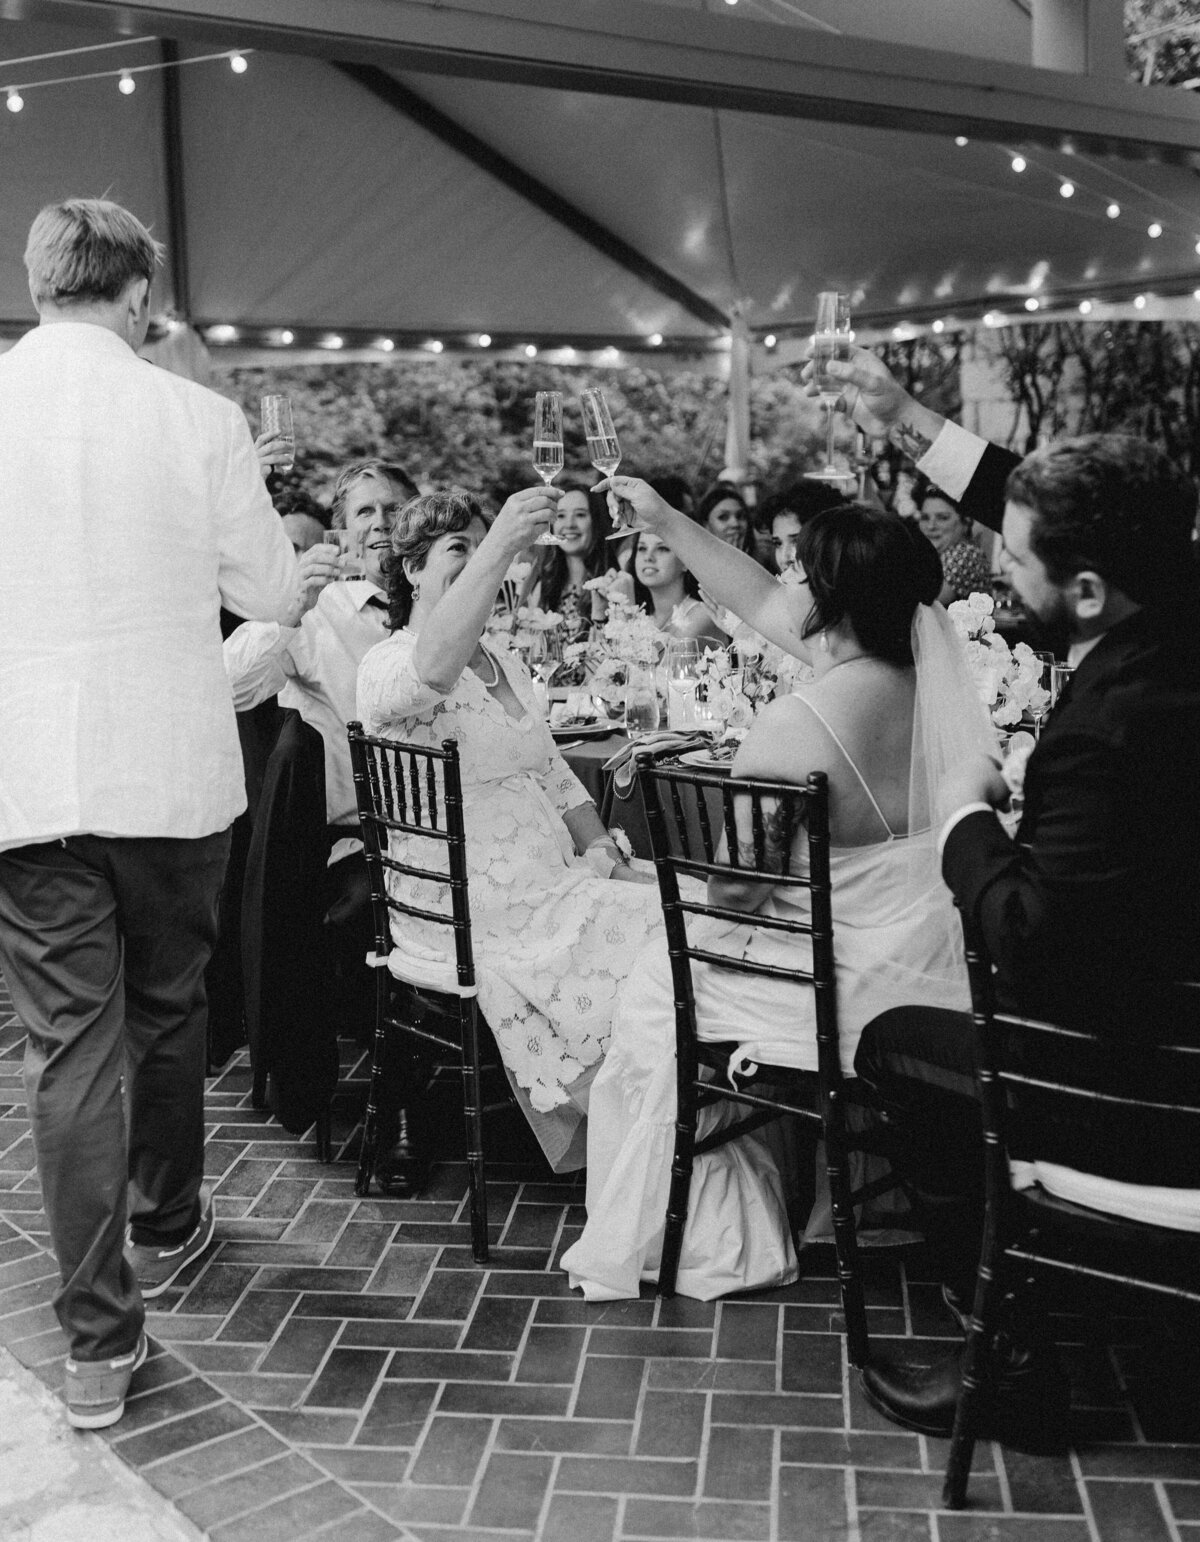 Wedding guests raising glasses at Umlauf Sculpture Garden, Austin